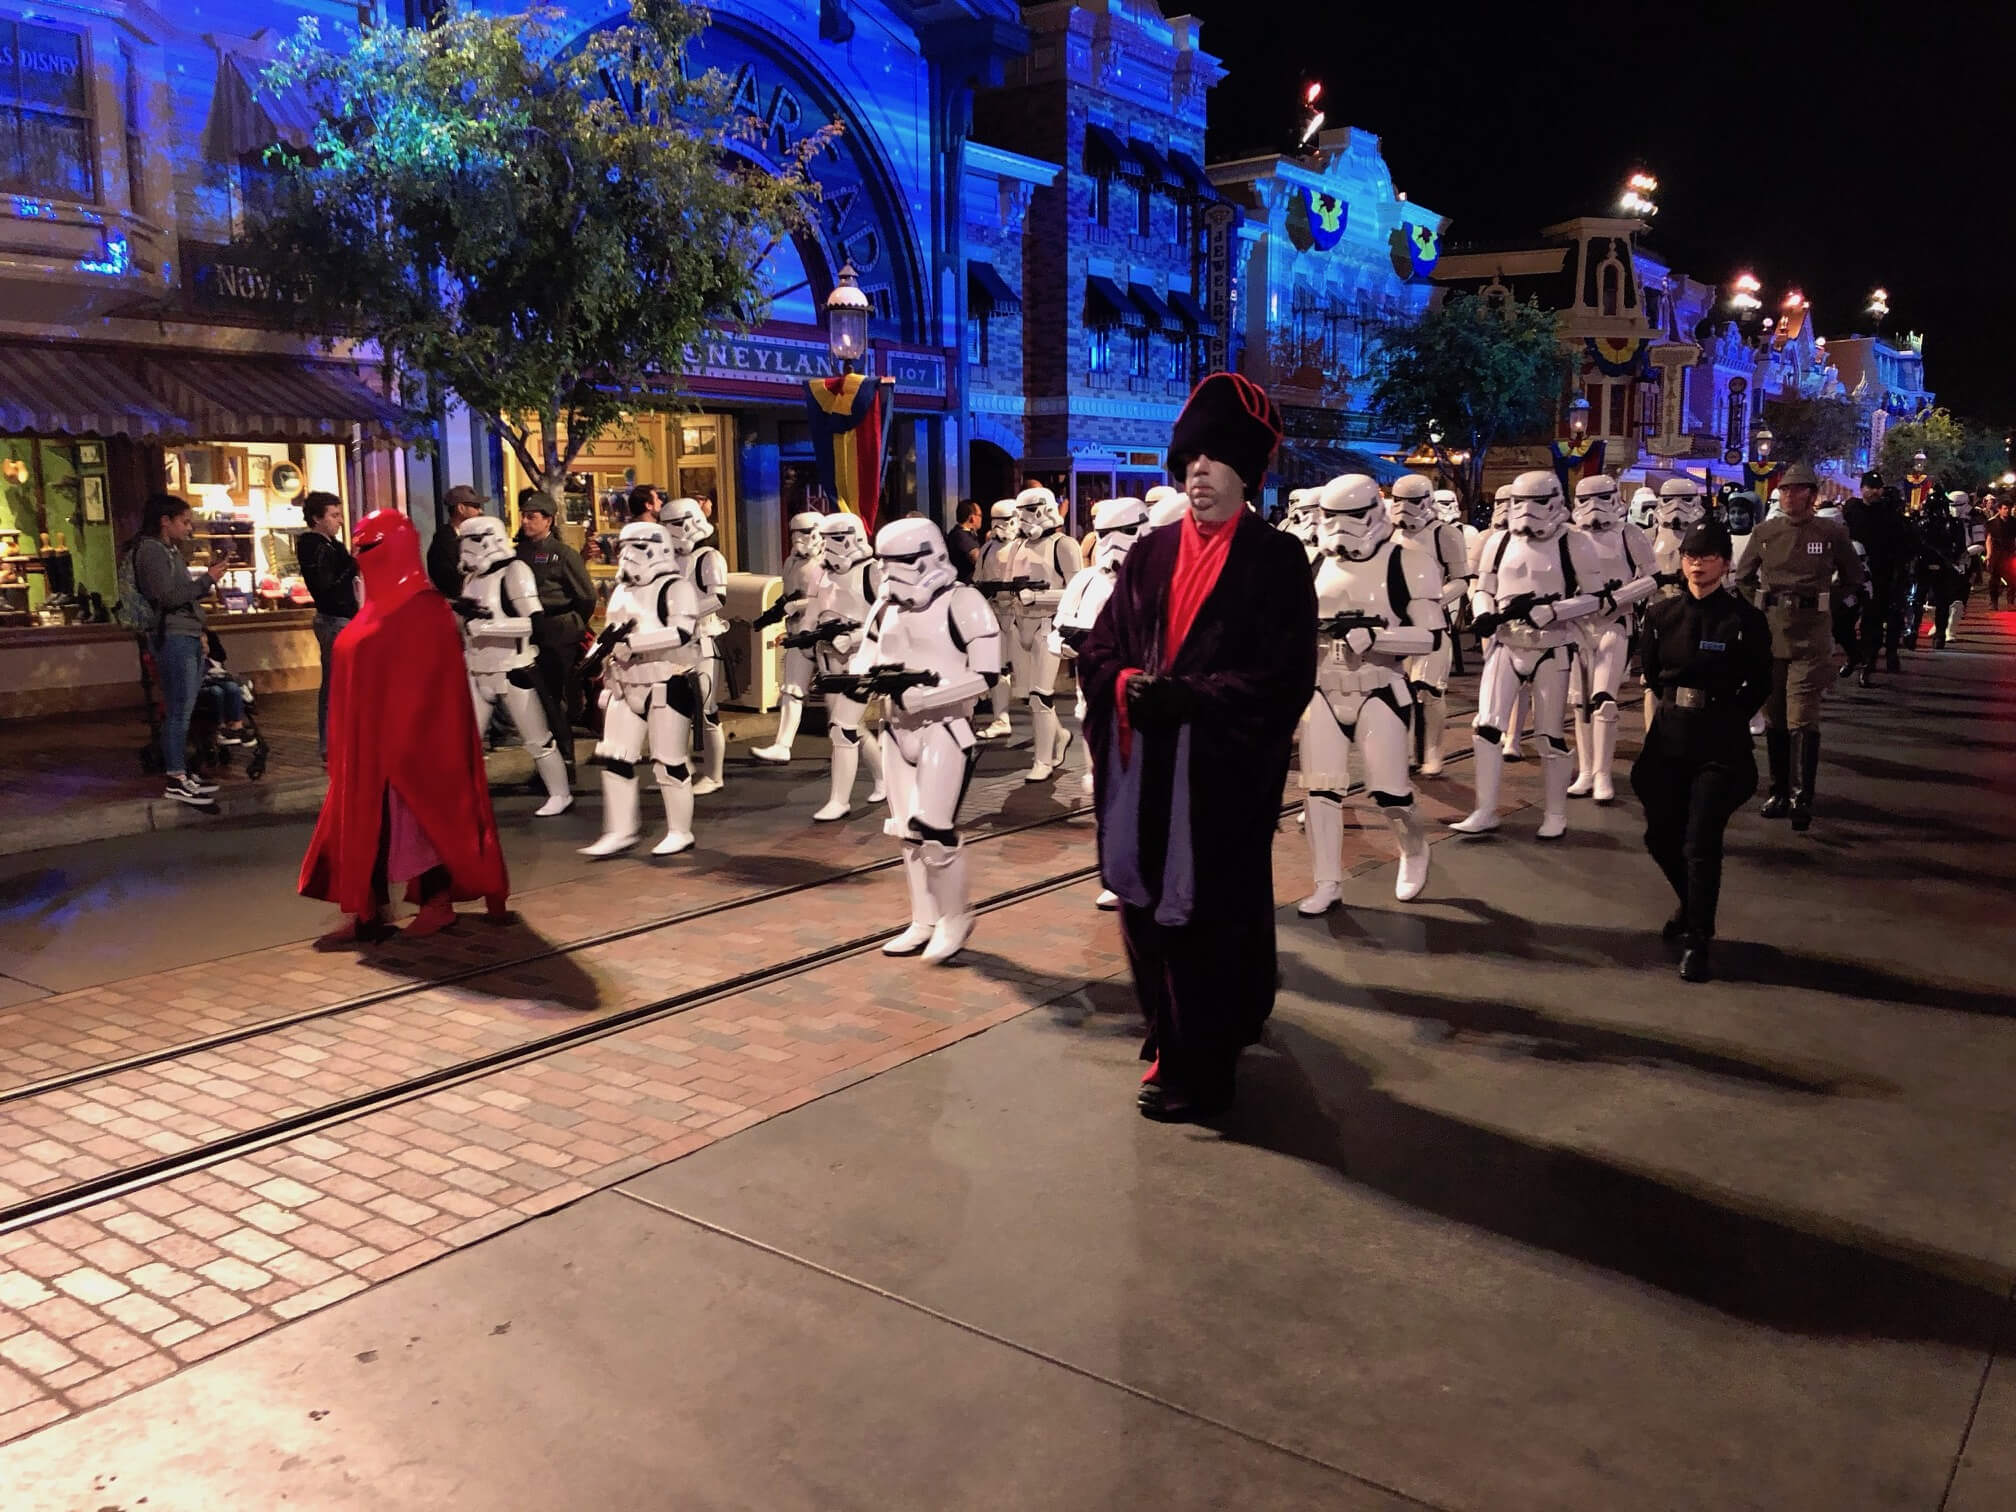 Disneyland After Dark Returns with Star Wars Nite Event